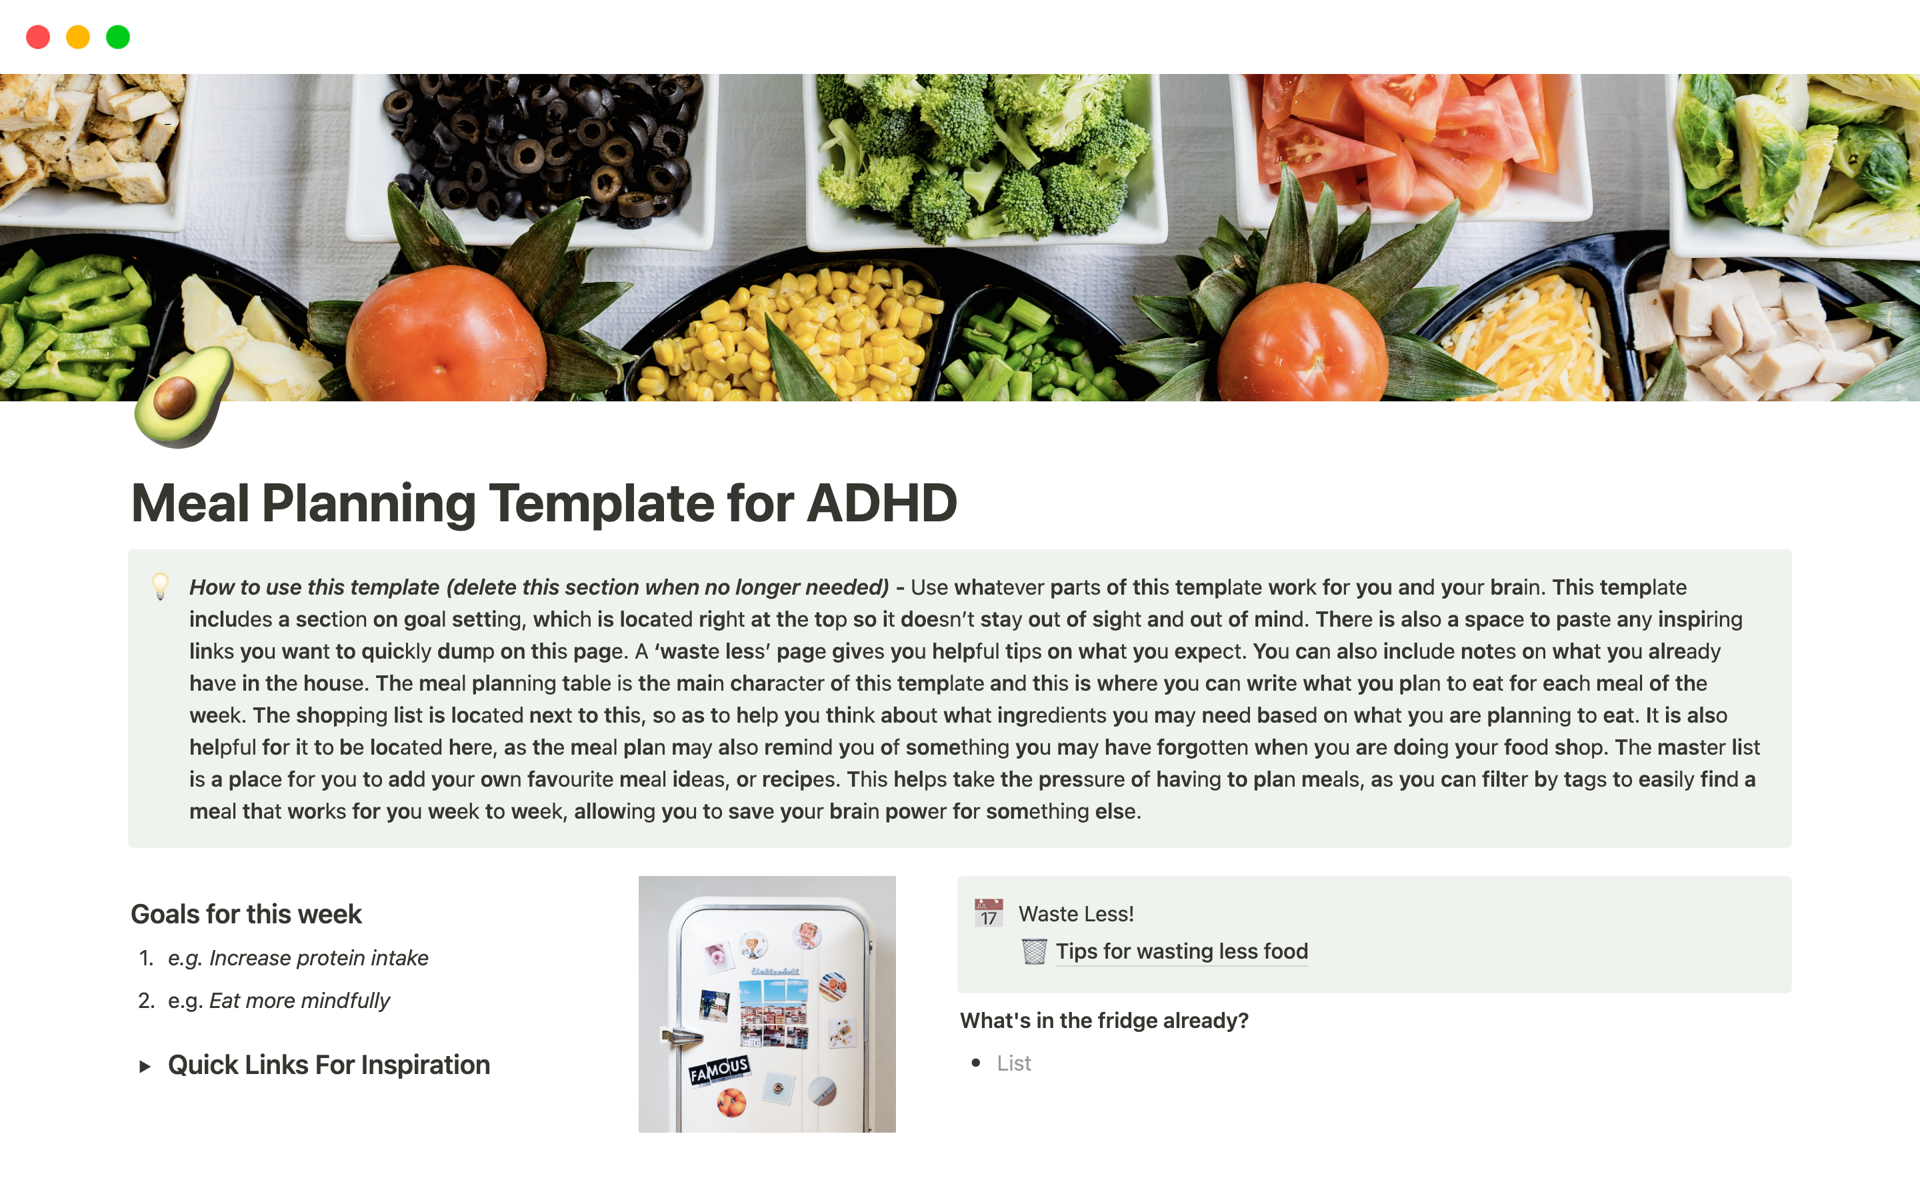 Uma prévia do modelo para Meal Planning Template for ADHD